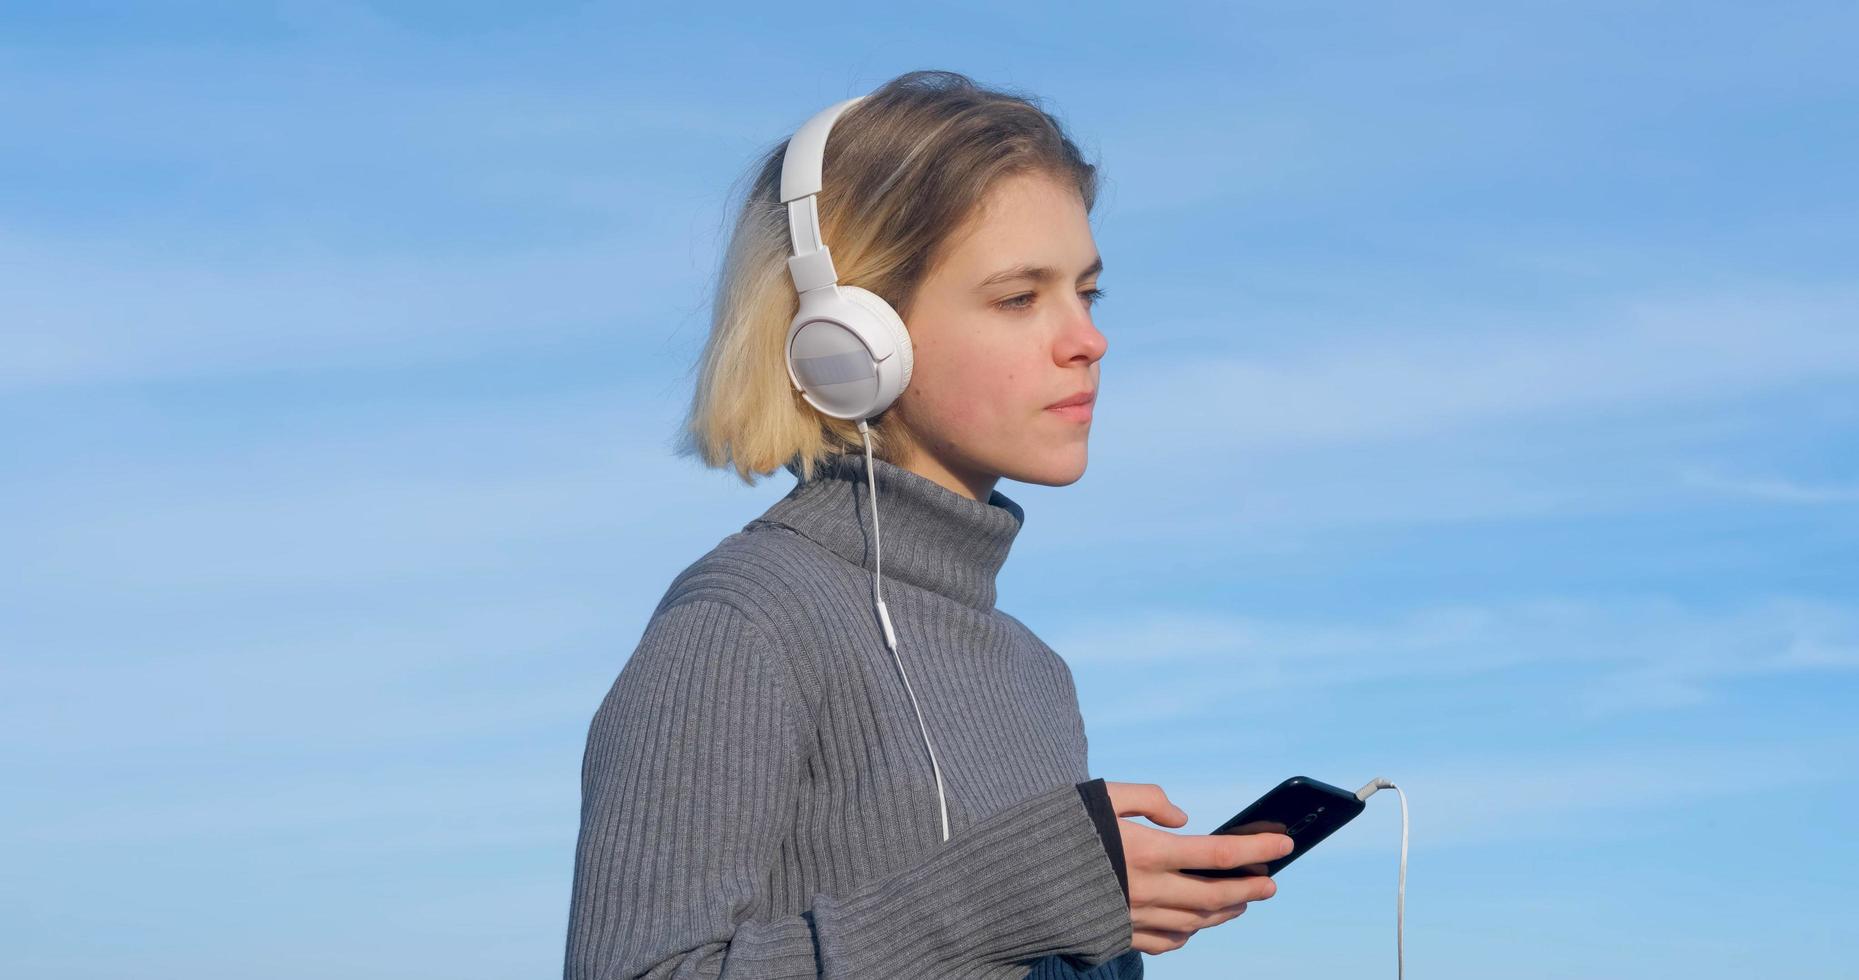 junge gutaussehende frau hört musik mit kopfhörern im freien am strand gegen sonnigen blauen himmel foto